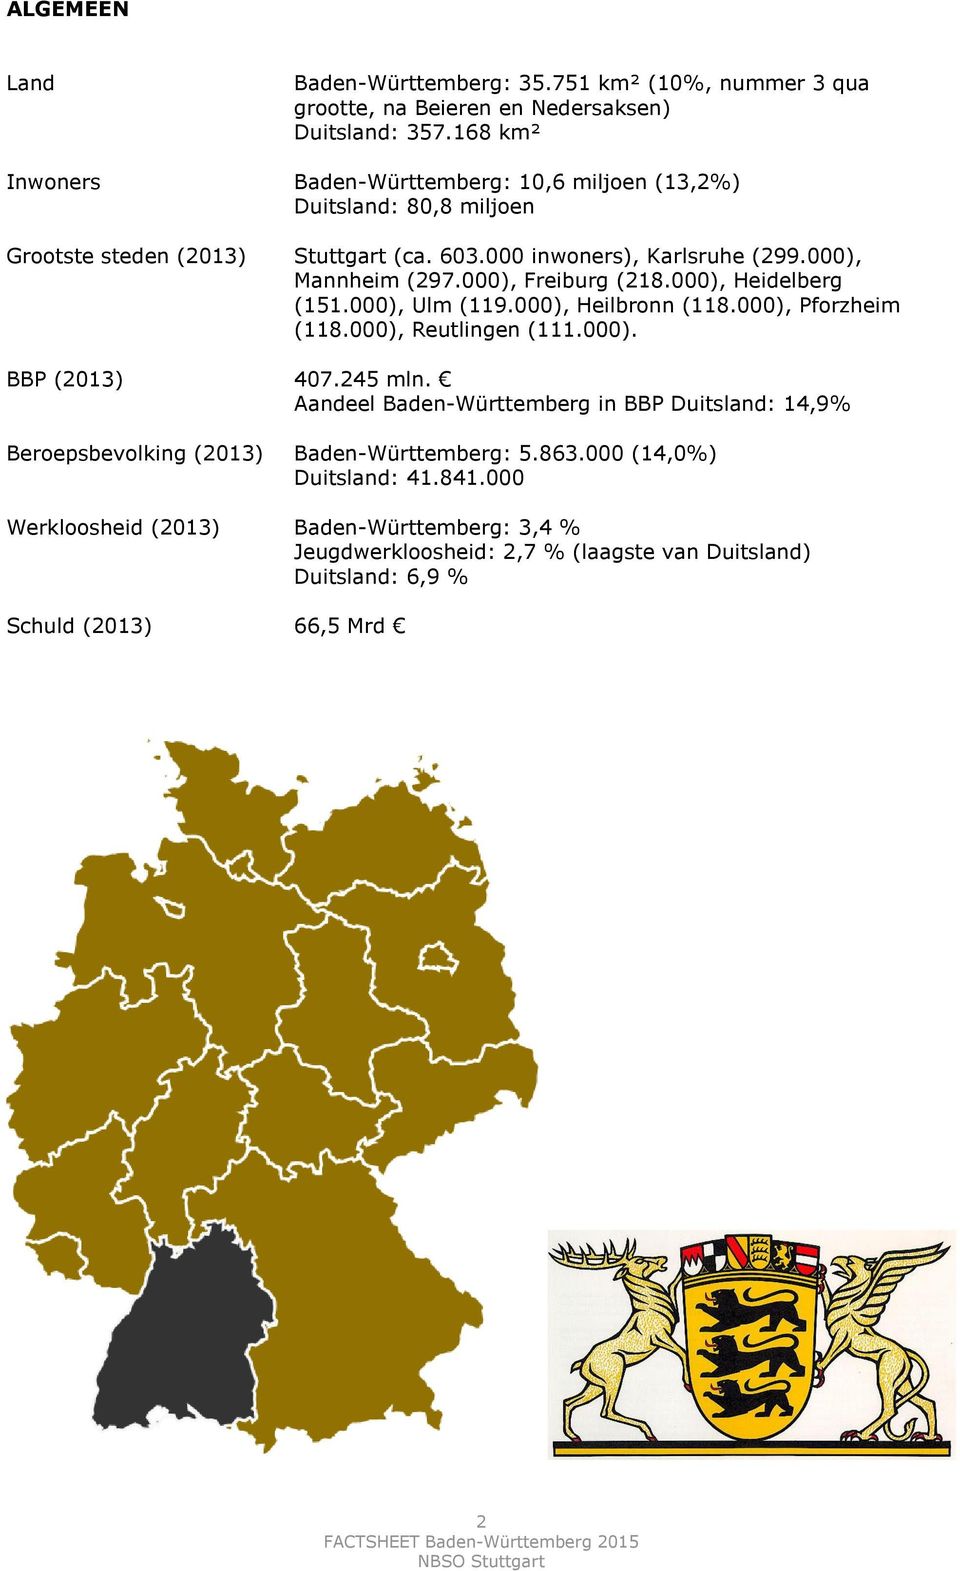 000), Freiburg (218.000), Heidelberg (151.000), Ulm (119.000), Heilbronn (118.000), Pforzheim (118.000), Reutlingen (111.000). BBP (2013) 407.245 mln.